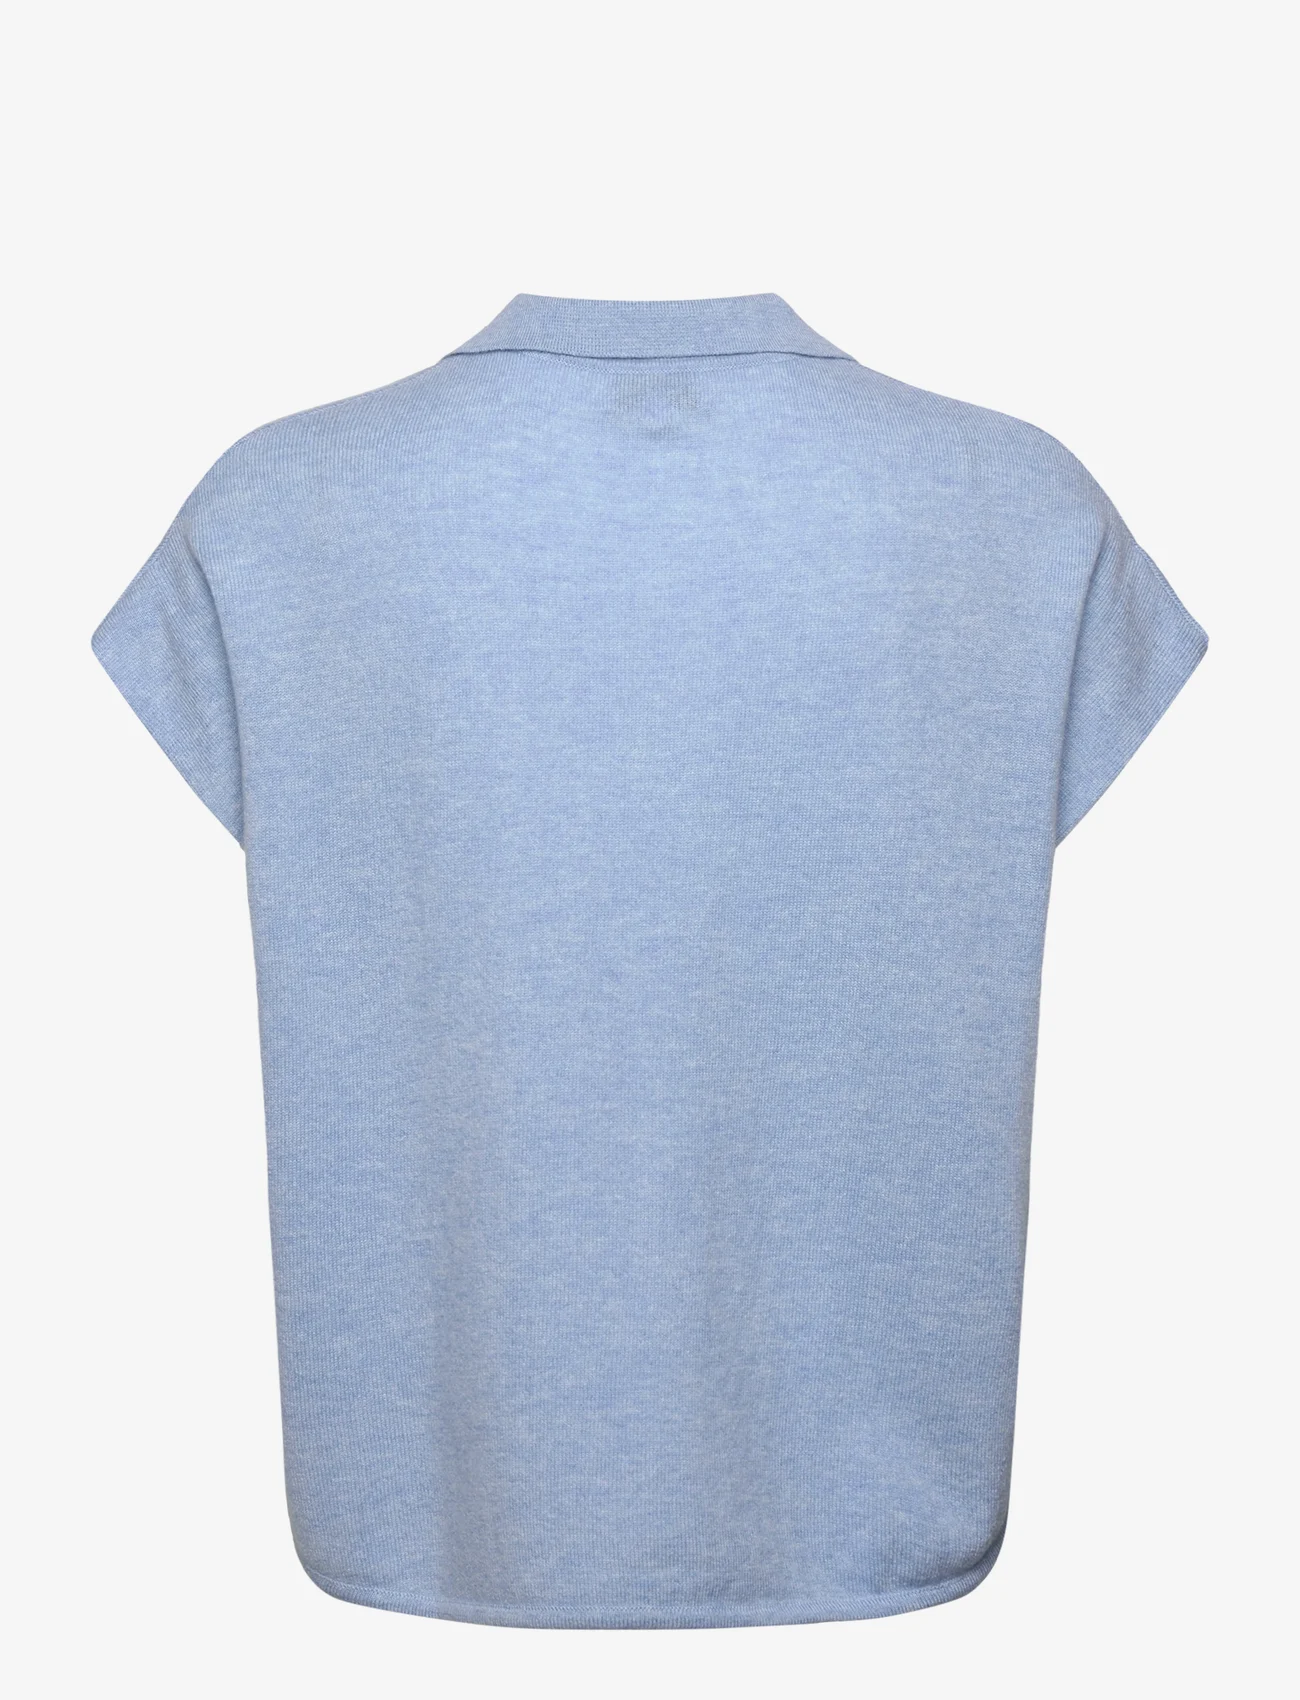 Davida Cashmere - Open Collar Cap Sleeve - polo marškinėliai - blue fog - 1